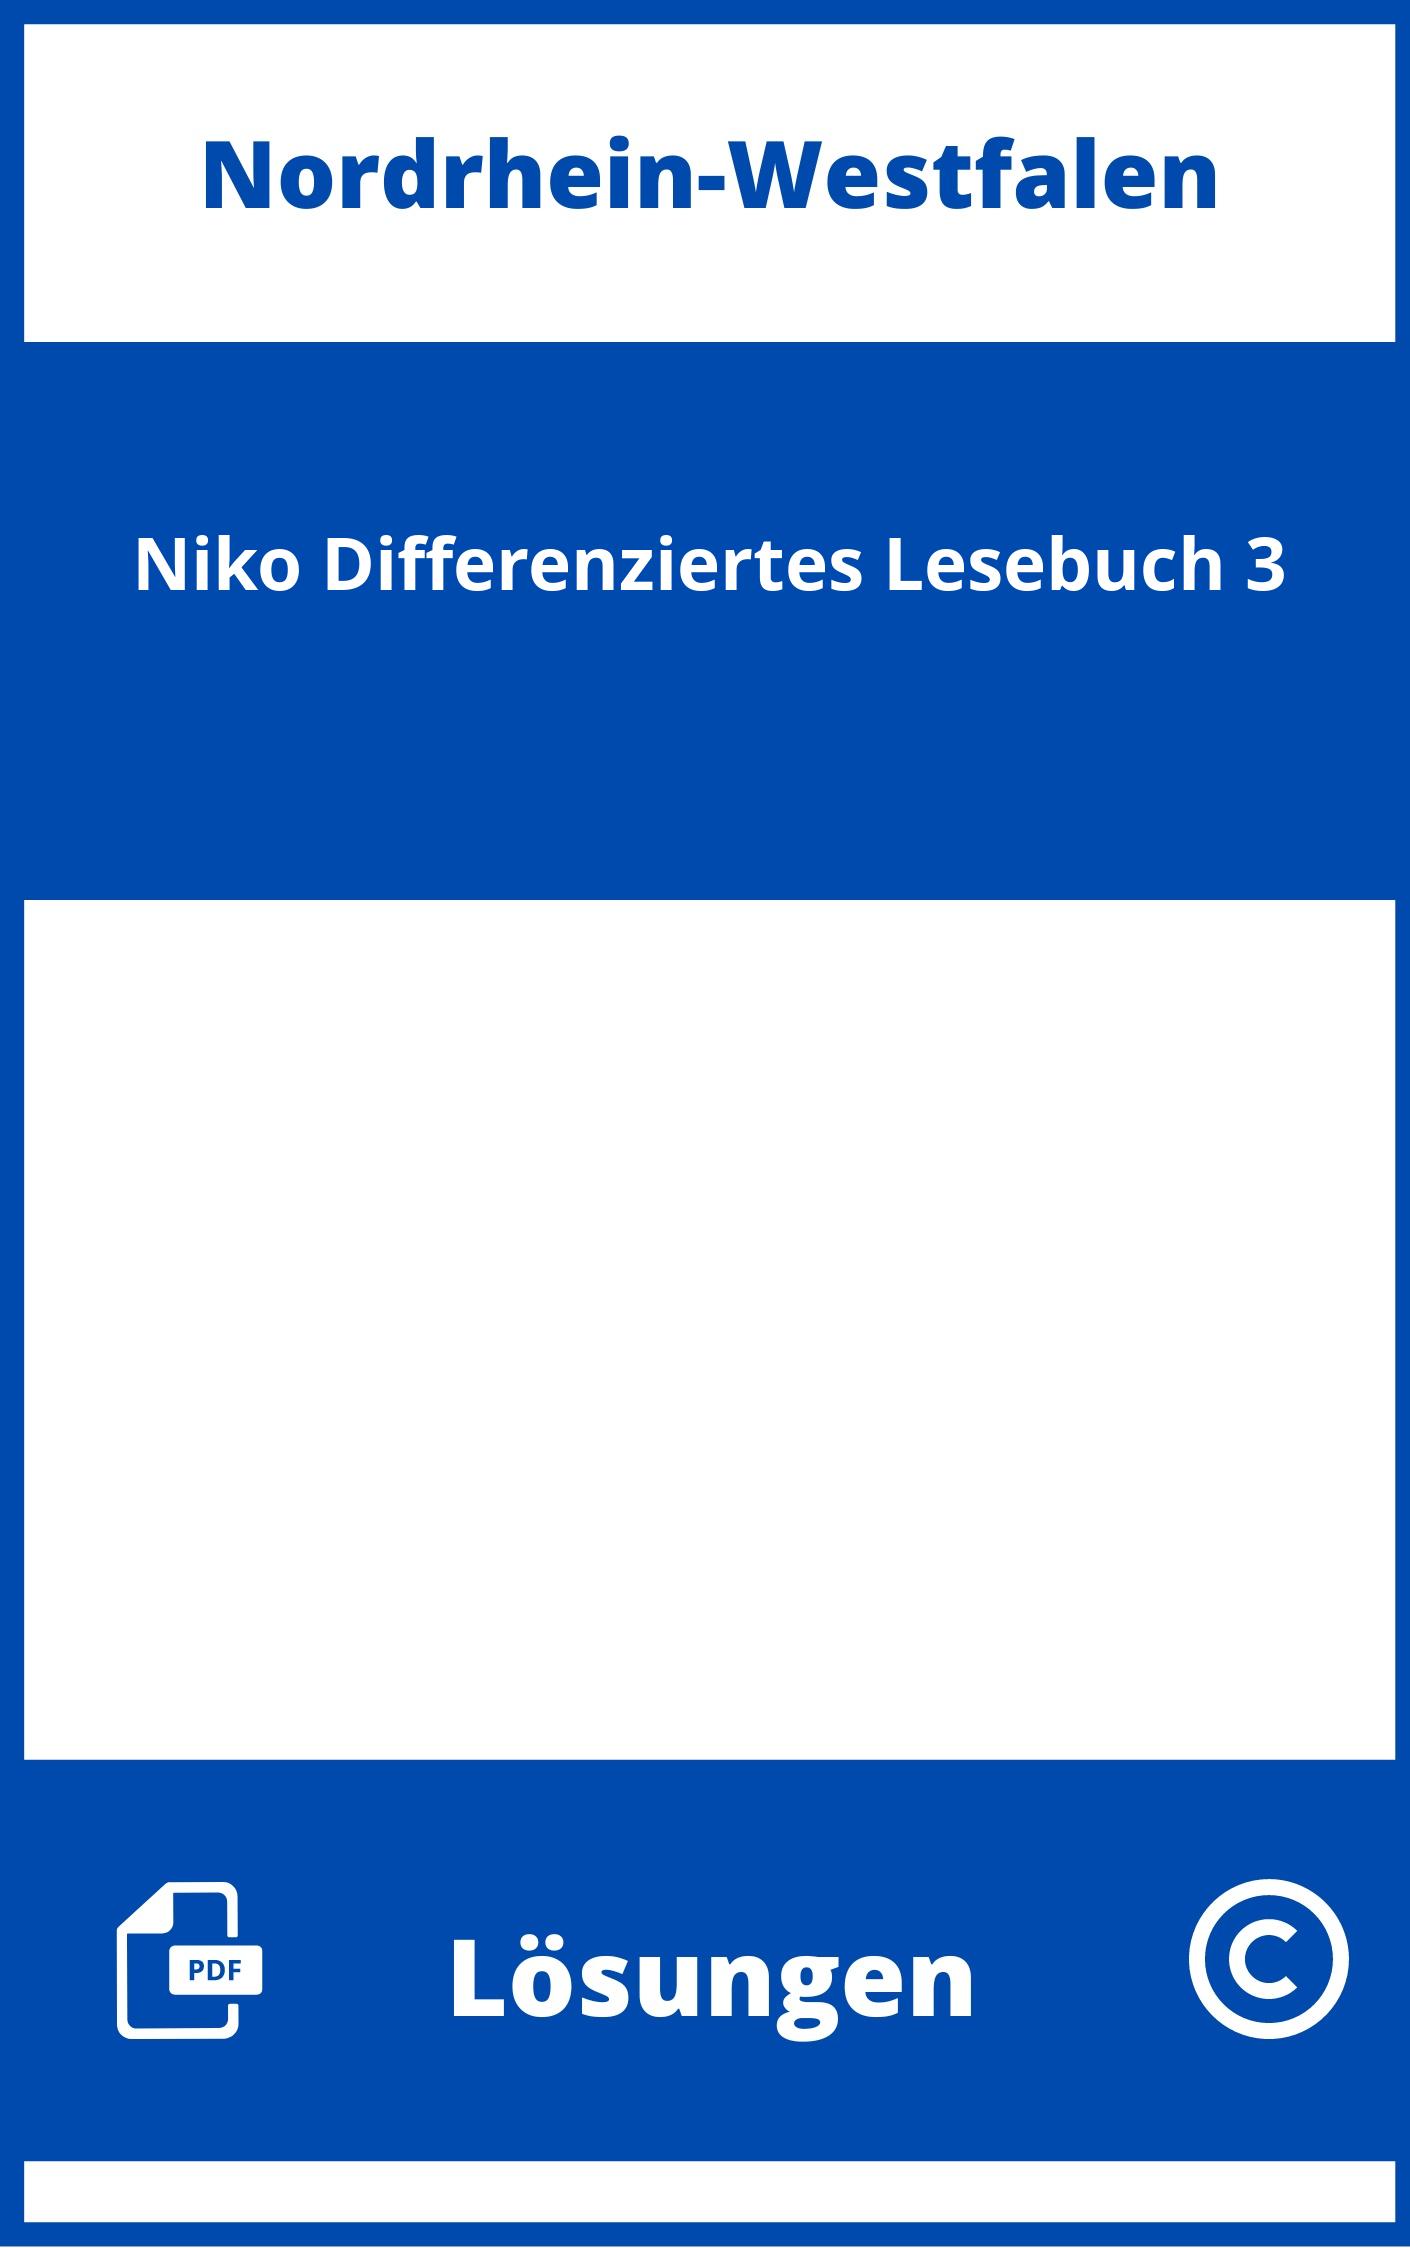 Niko Differenziertes Lesebuch 3 Lösungen NRW PDF